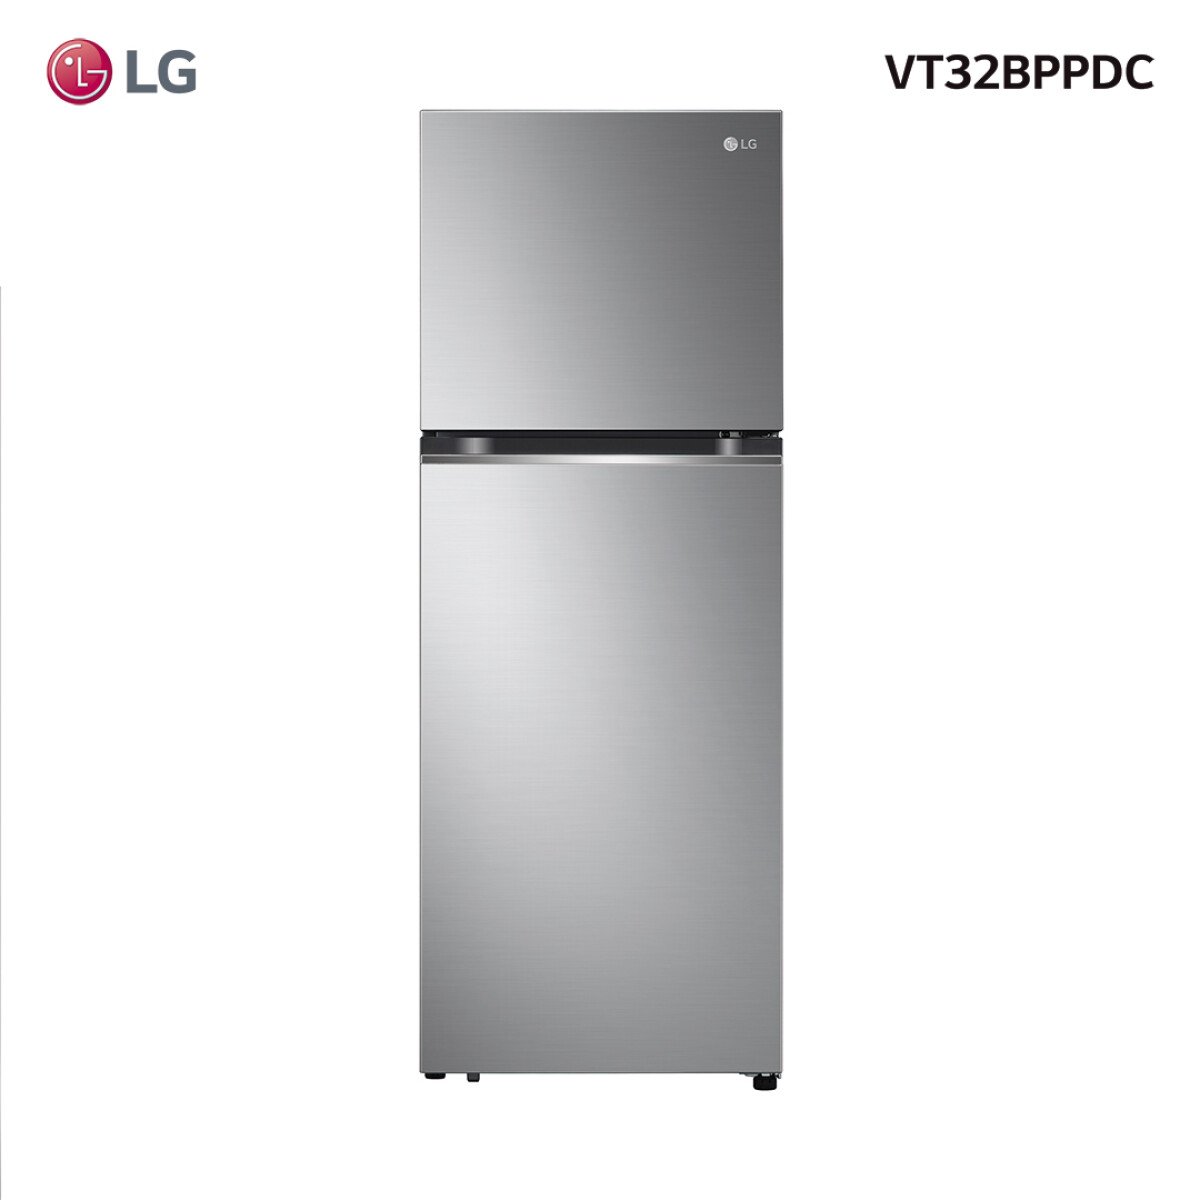 Refrigerador LG inverter 340L VT32BPPDC 